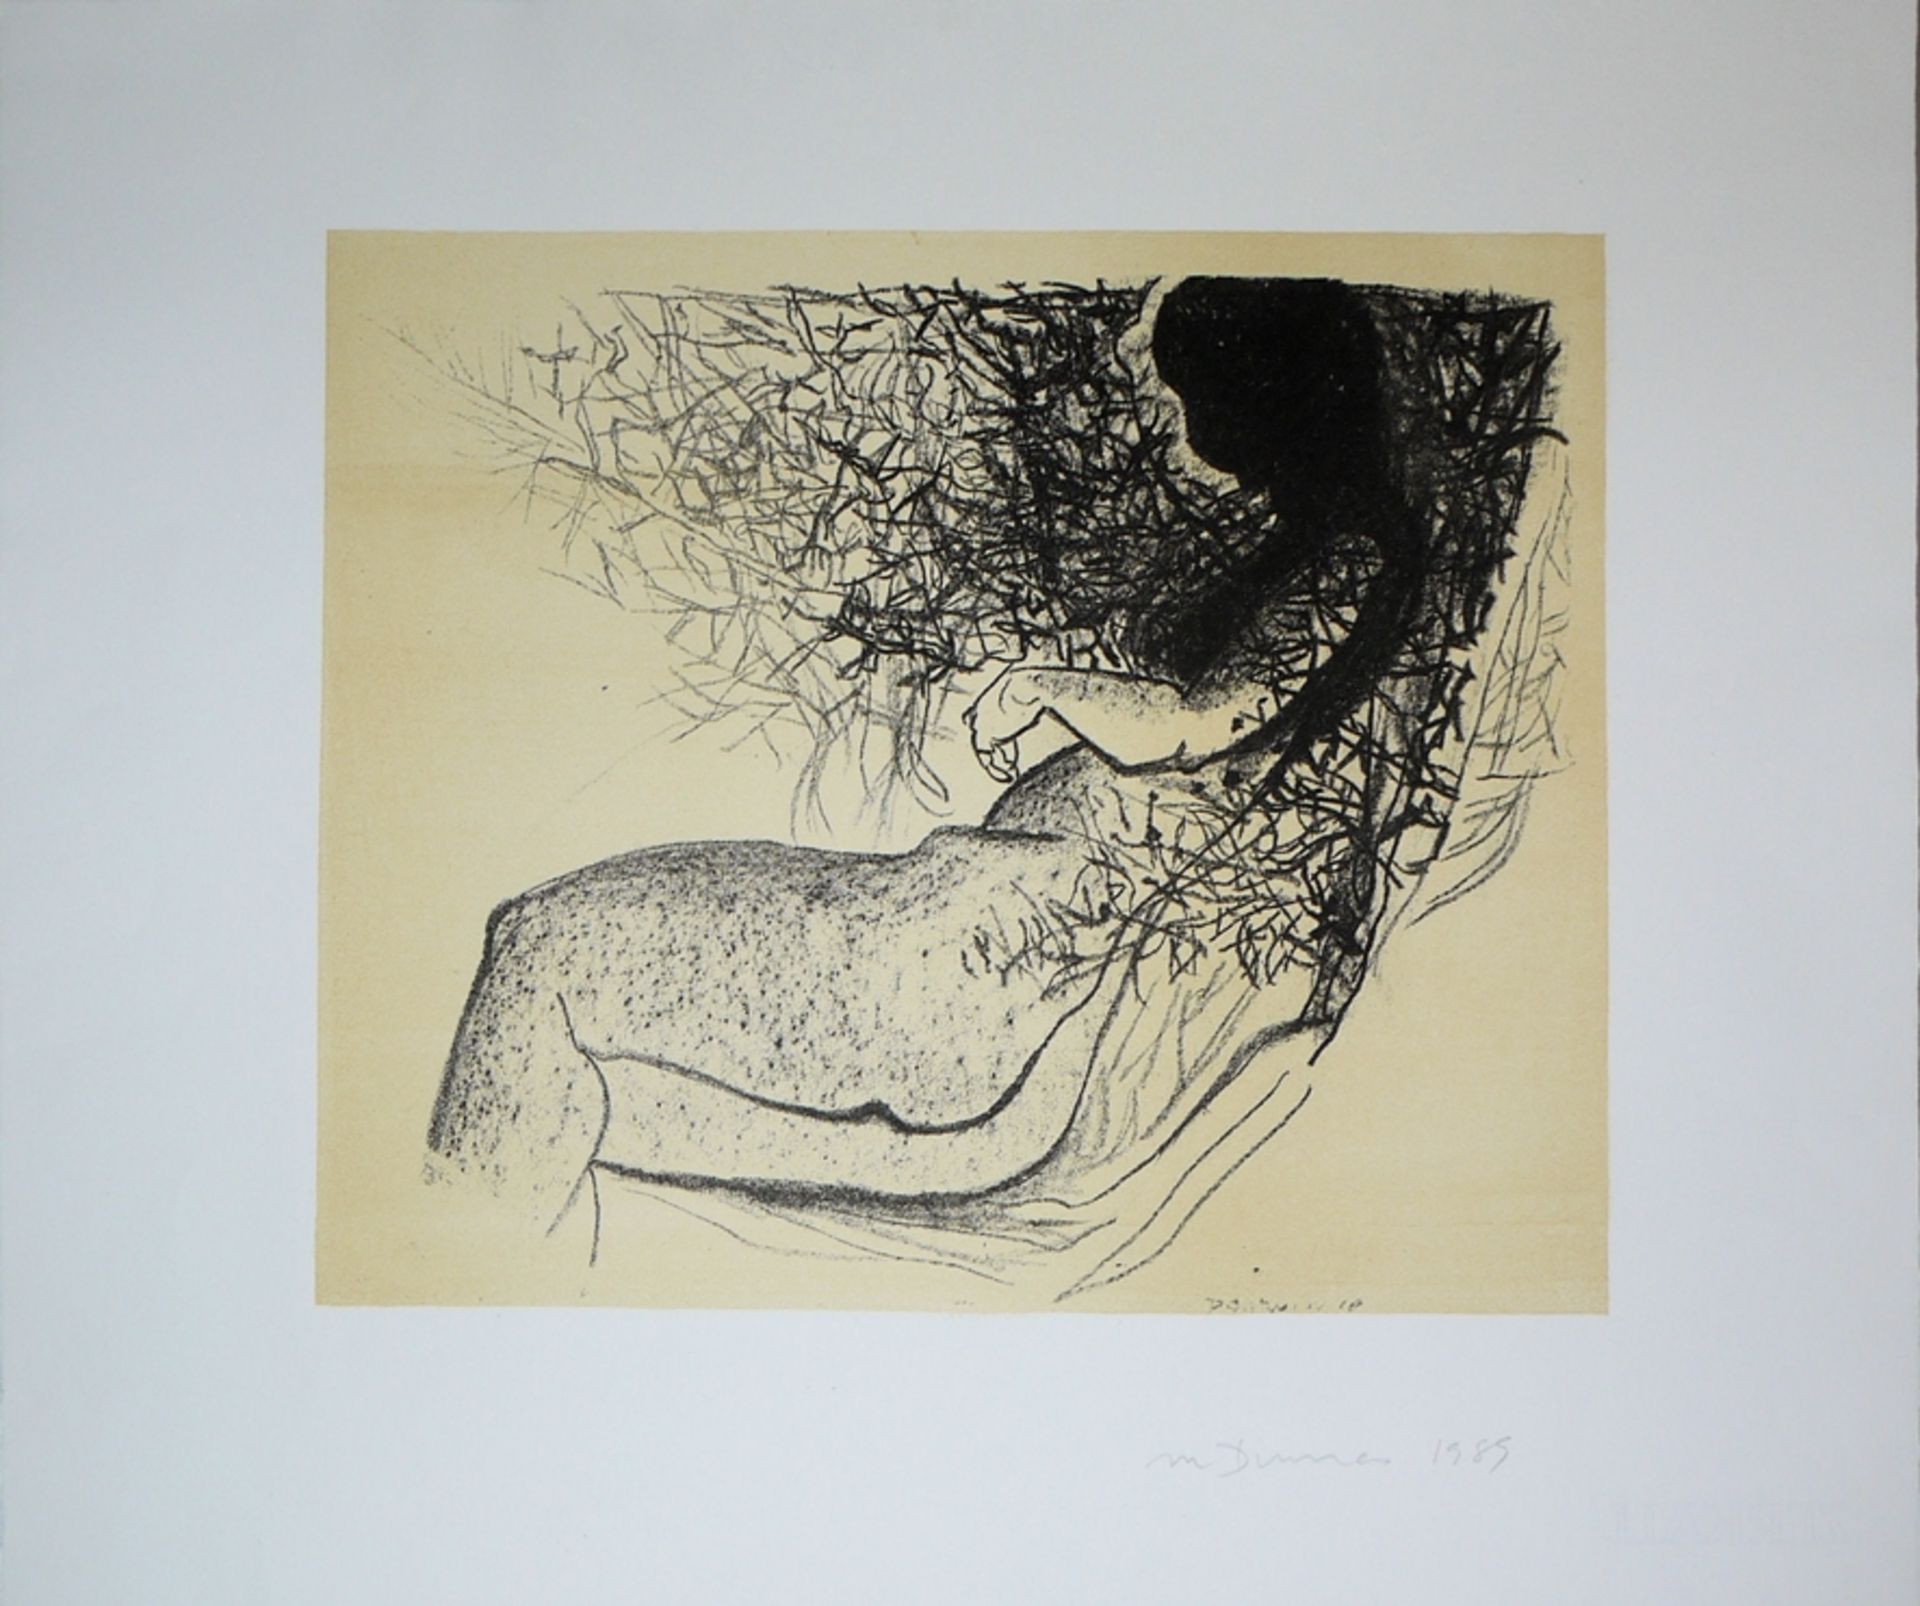 Marlene Dumas, "Doornrosie", Lithographie von 1989, signiert